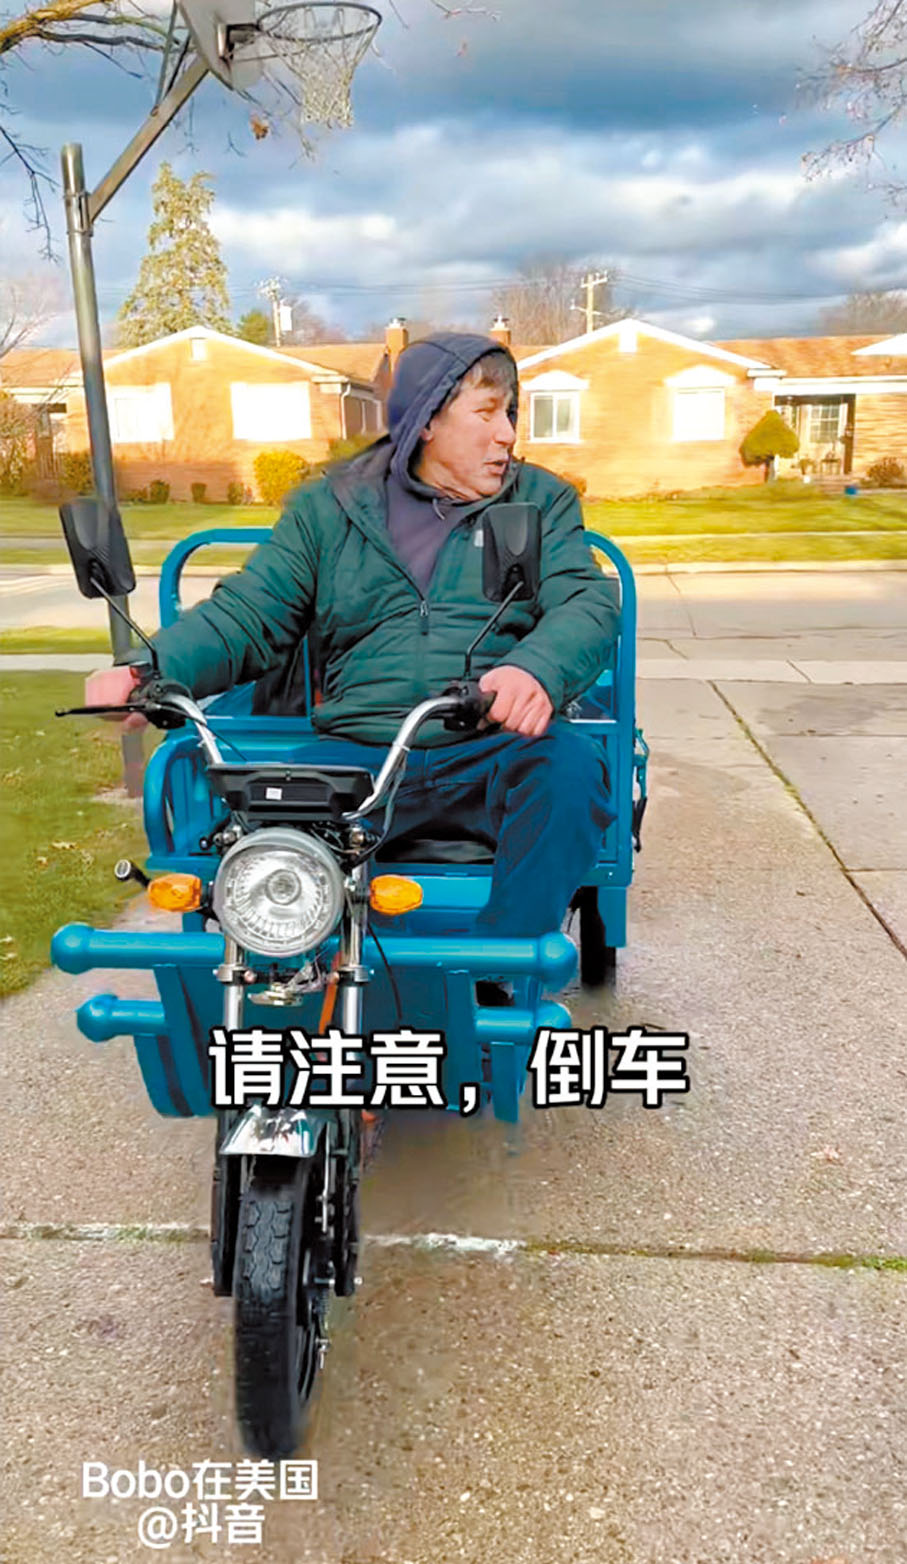 ◆「倒車請注意」的經典漢語倒車提醒語音在海外響起。 視頻截圖